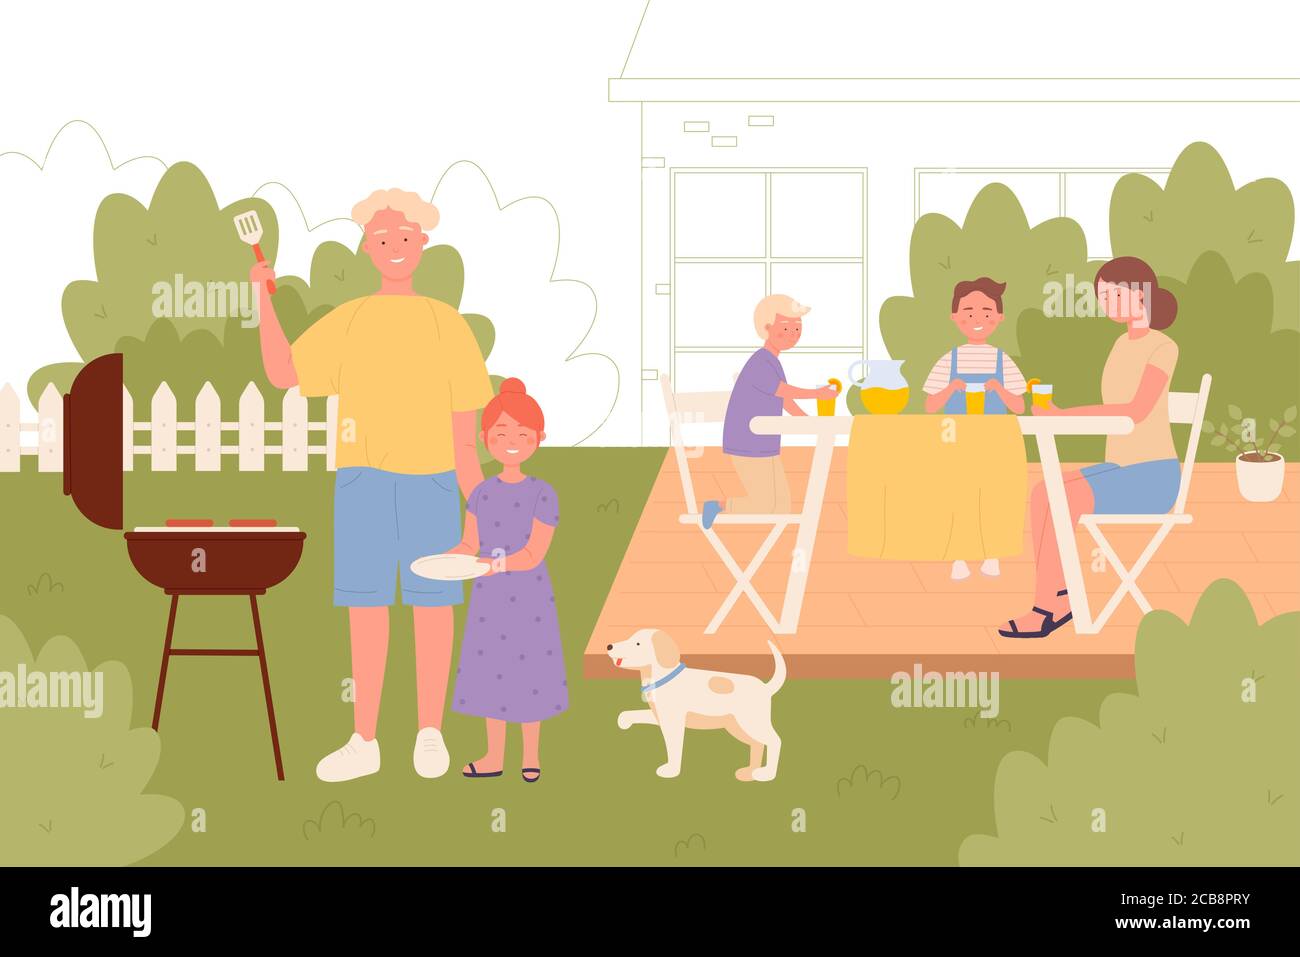 Familie auf Picknick-Vektor-Illustration. Kinder und Eltern, die draußen ruhen, Familienmitglieder, die zusammen flache Charaktere nachbilden. Sommer Garten Freizeit, Grill. Stock Vektor